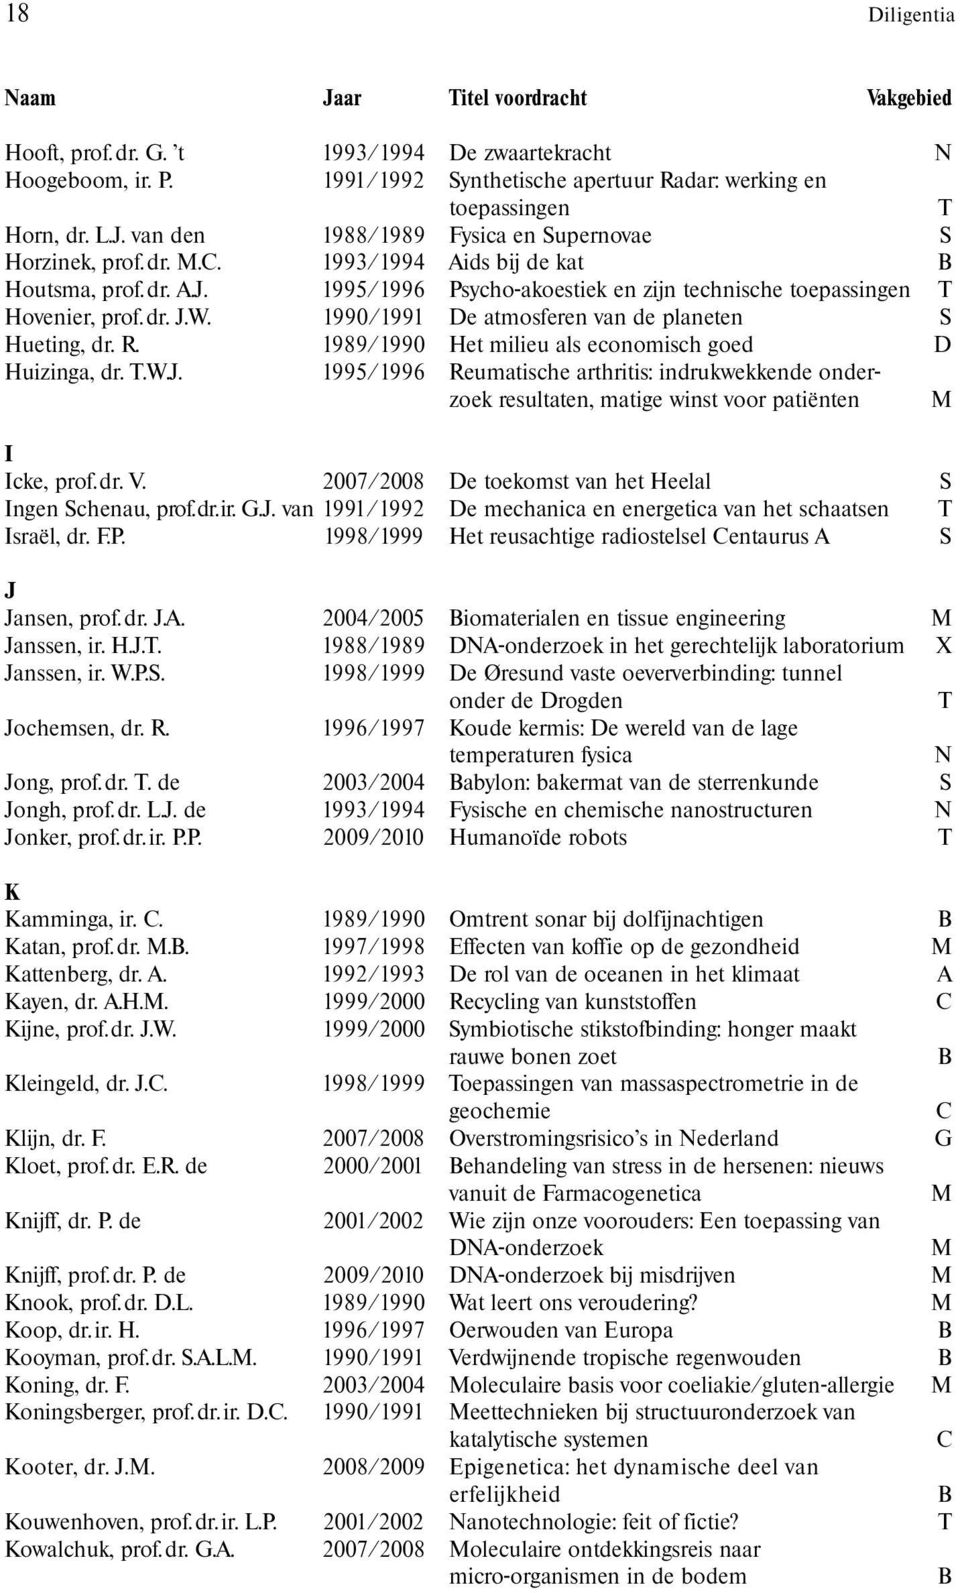 1990/1991 De atmosferen van de planeten S Hueting, dr. R. 1989/1990 Het milieu als economisch goed D Huizinga, dr. T.W.J.